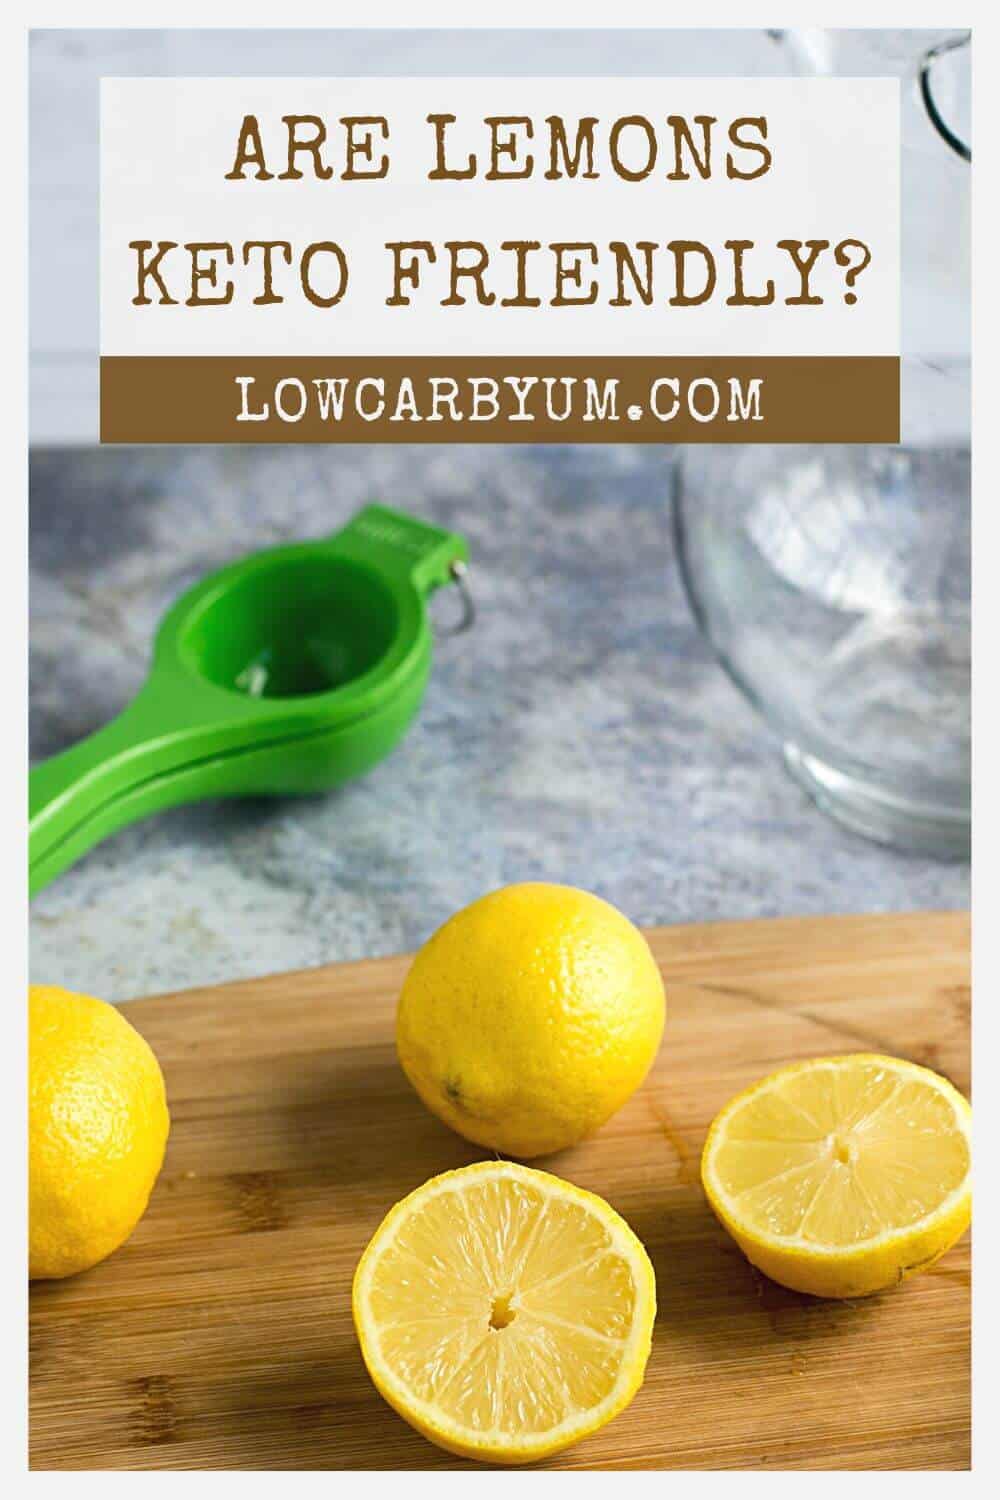 are lemons keto pinterest image.